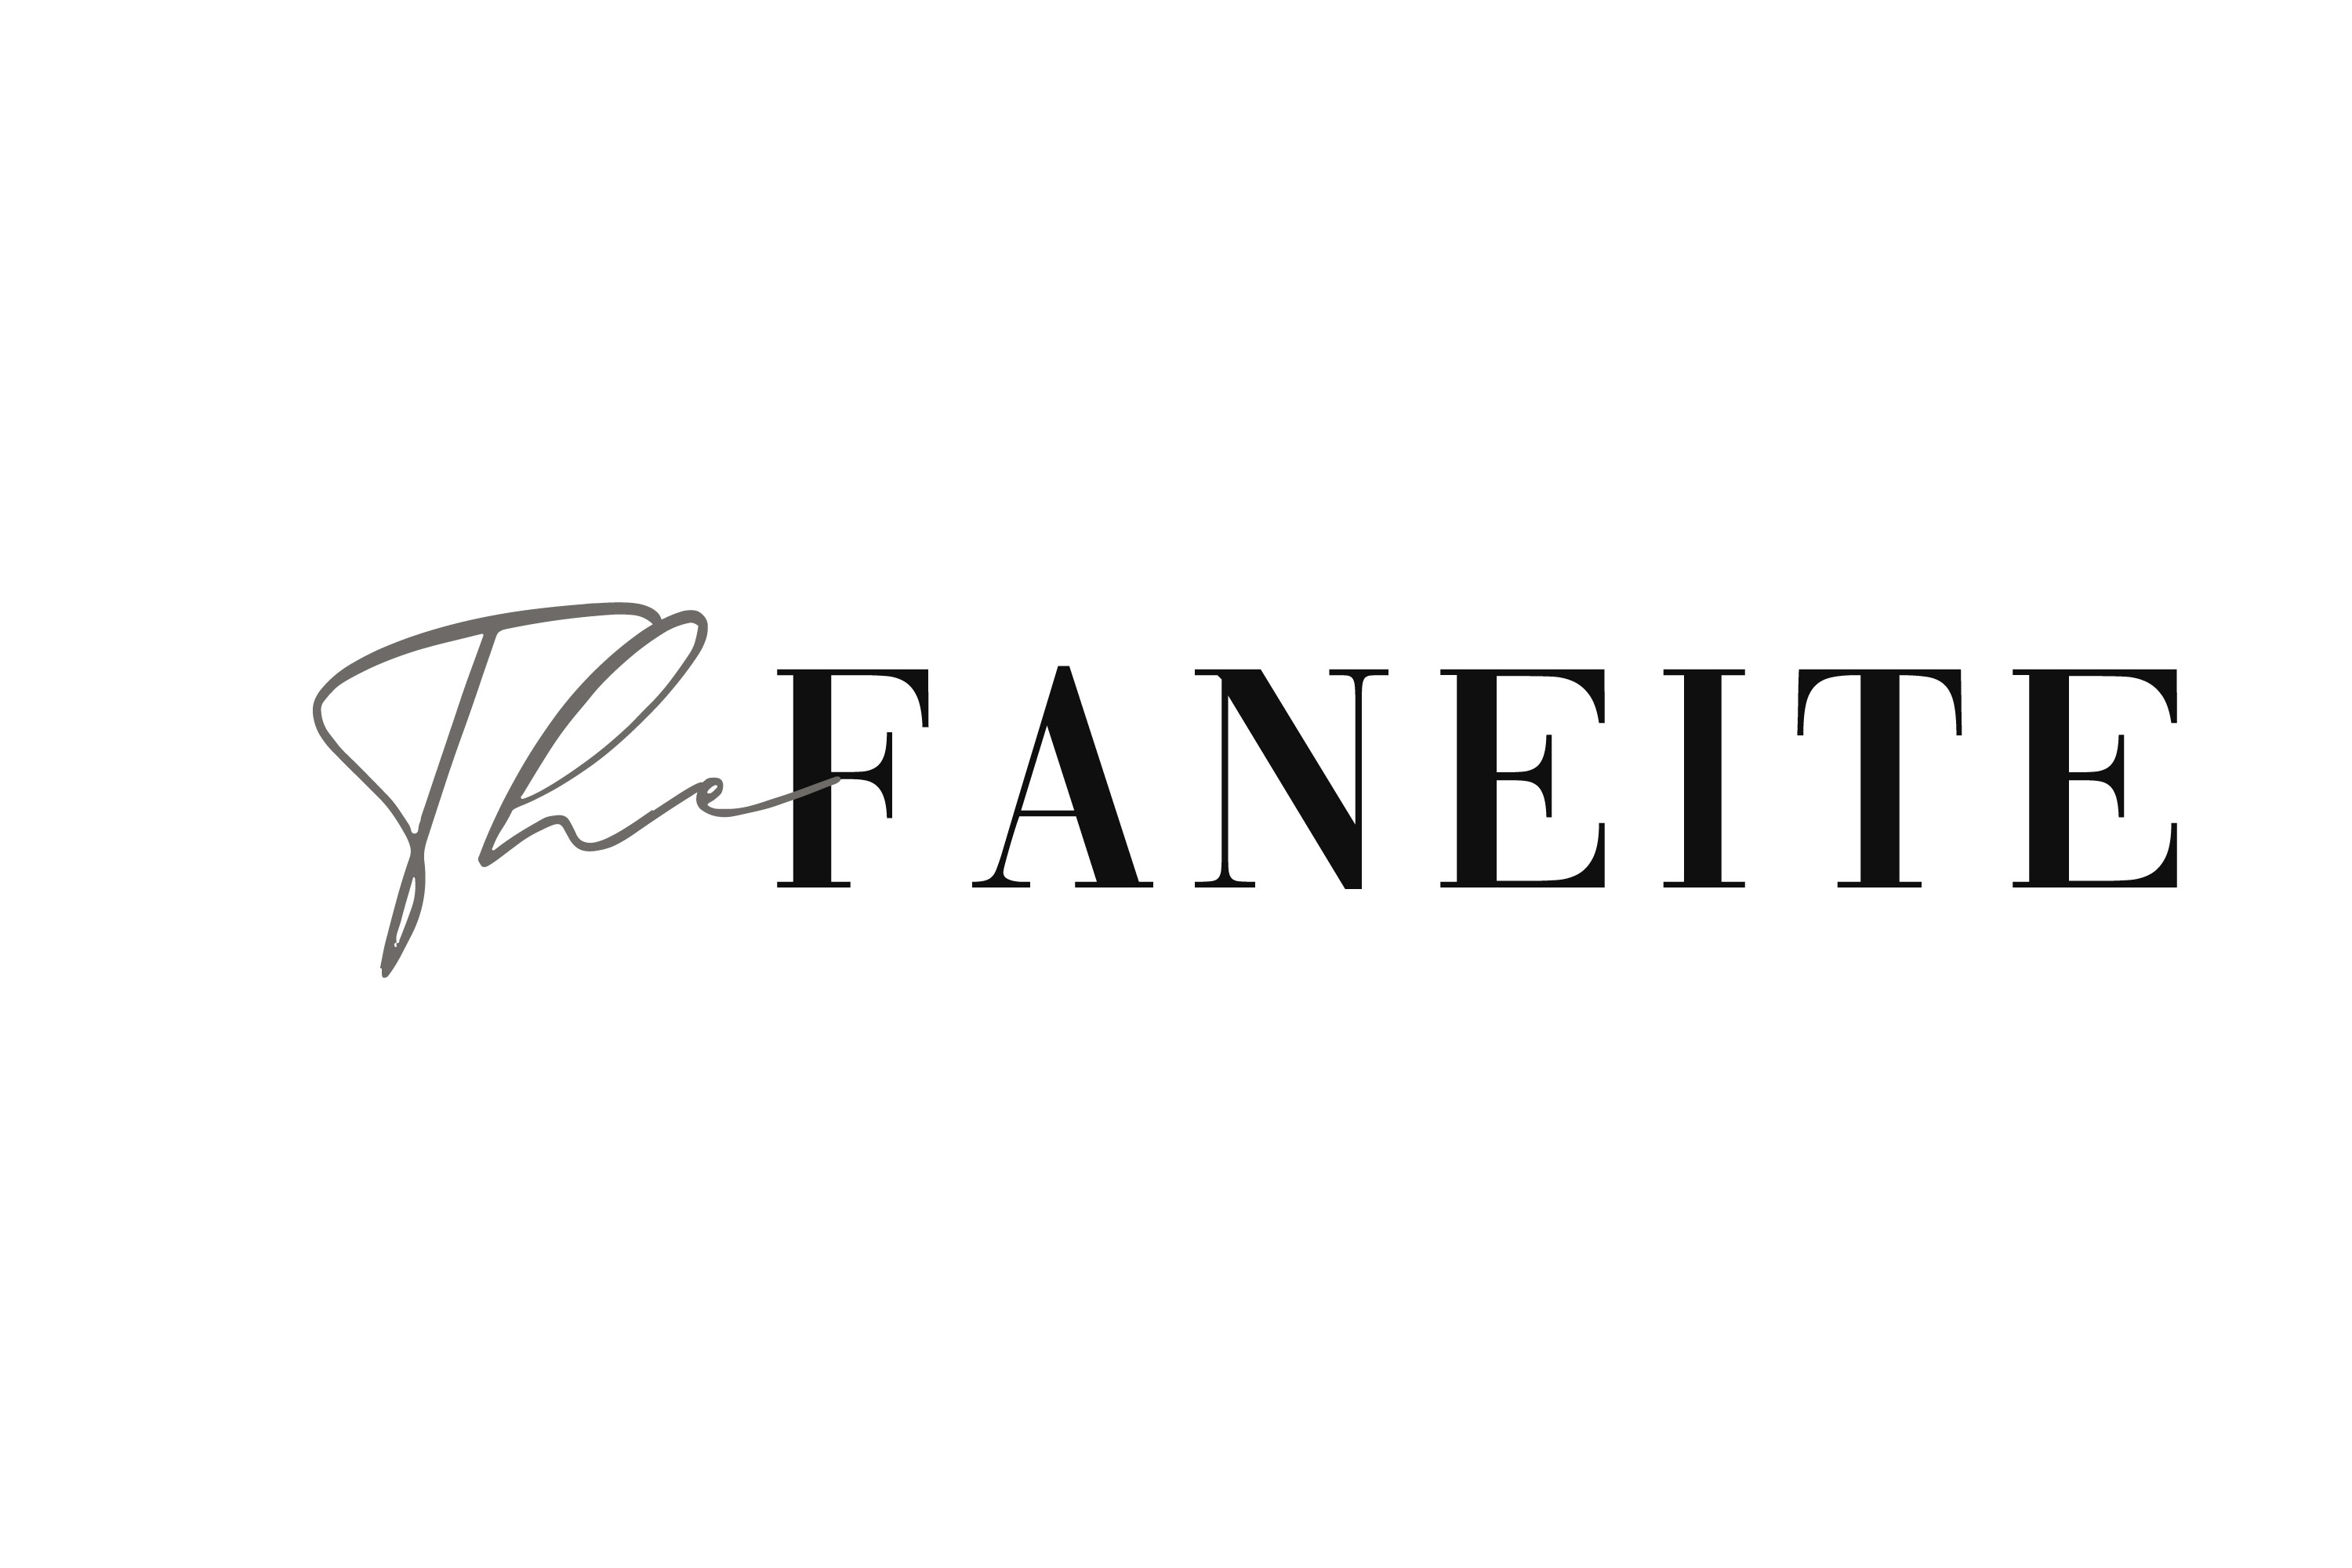 The Faneite